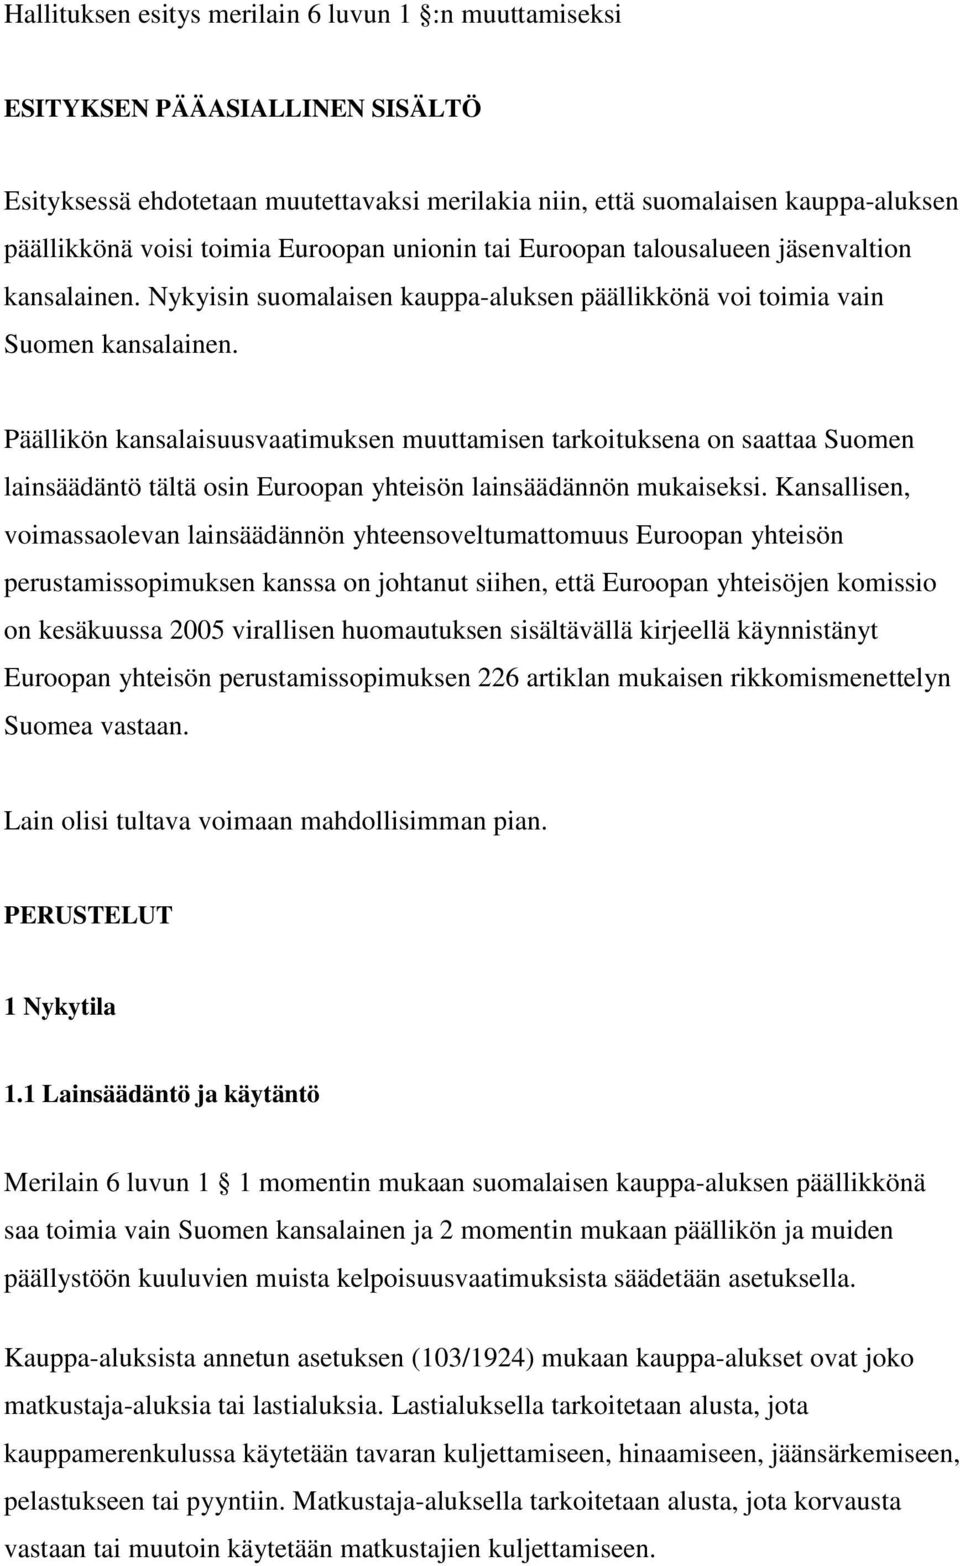 Päällikön kansalaisuusvaatimuksen muuttamisen tarkoituksena on saattaa Suomen lainsäädäntö tältä osin Euroopan yhteisön lainsäädännön mukaiseksi.